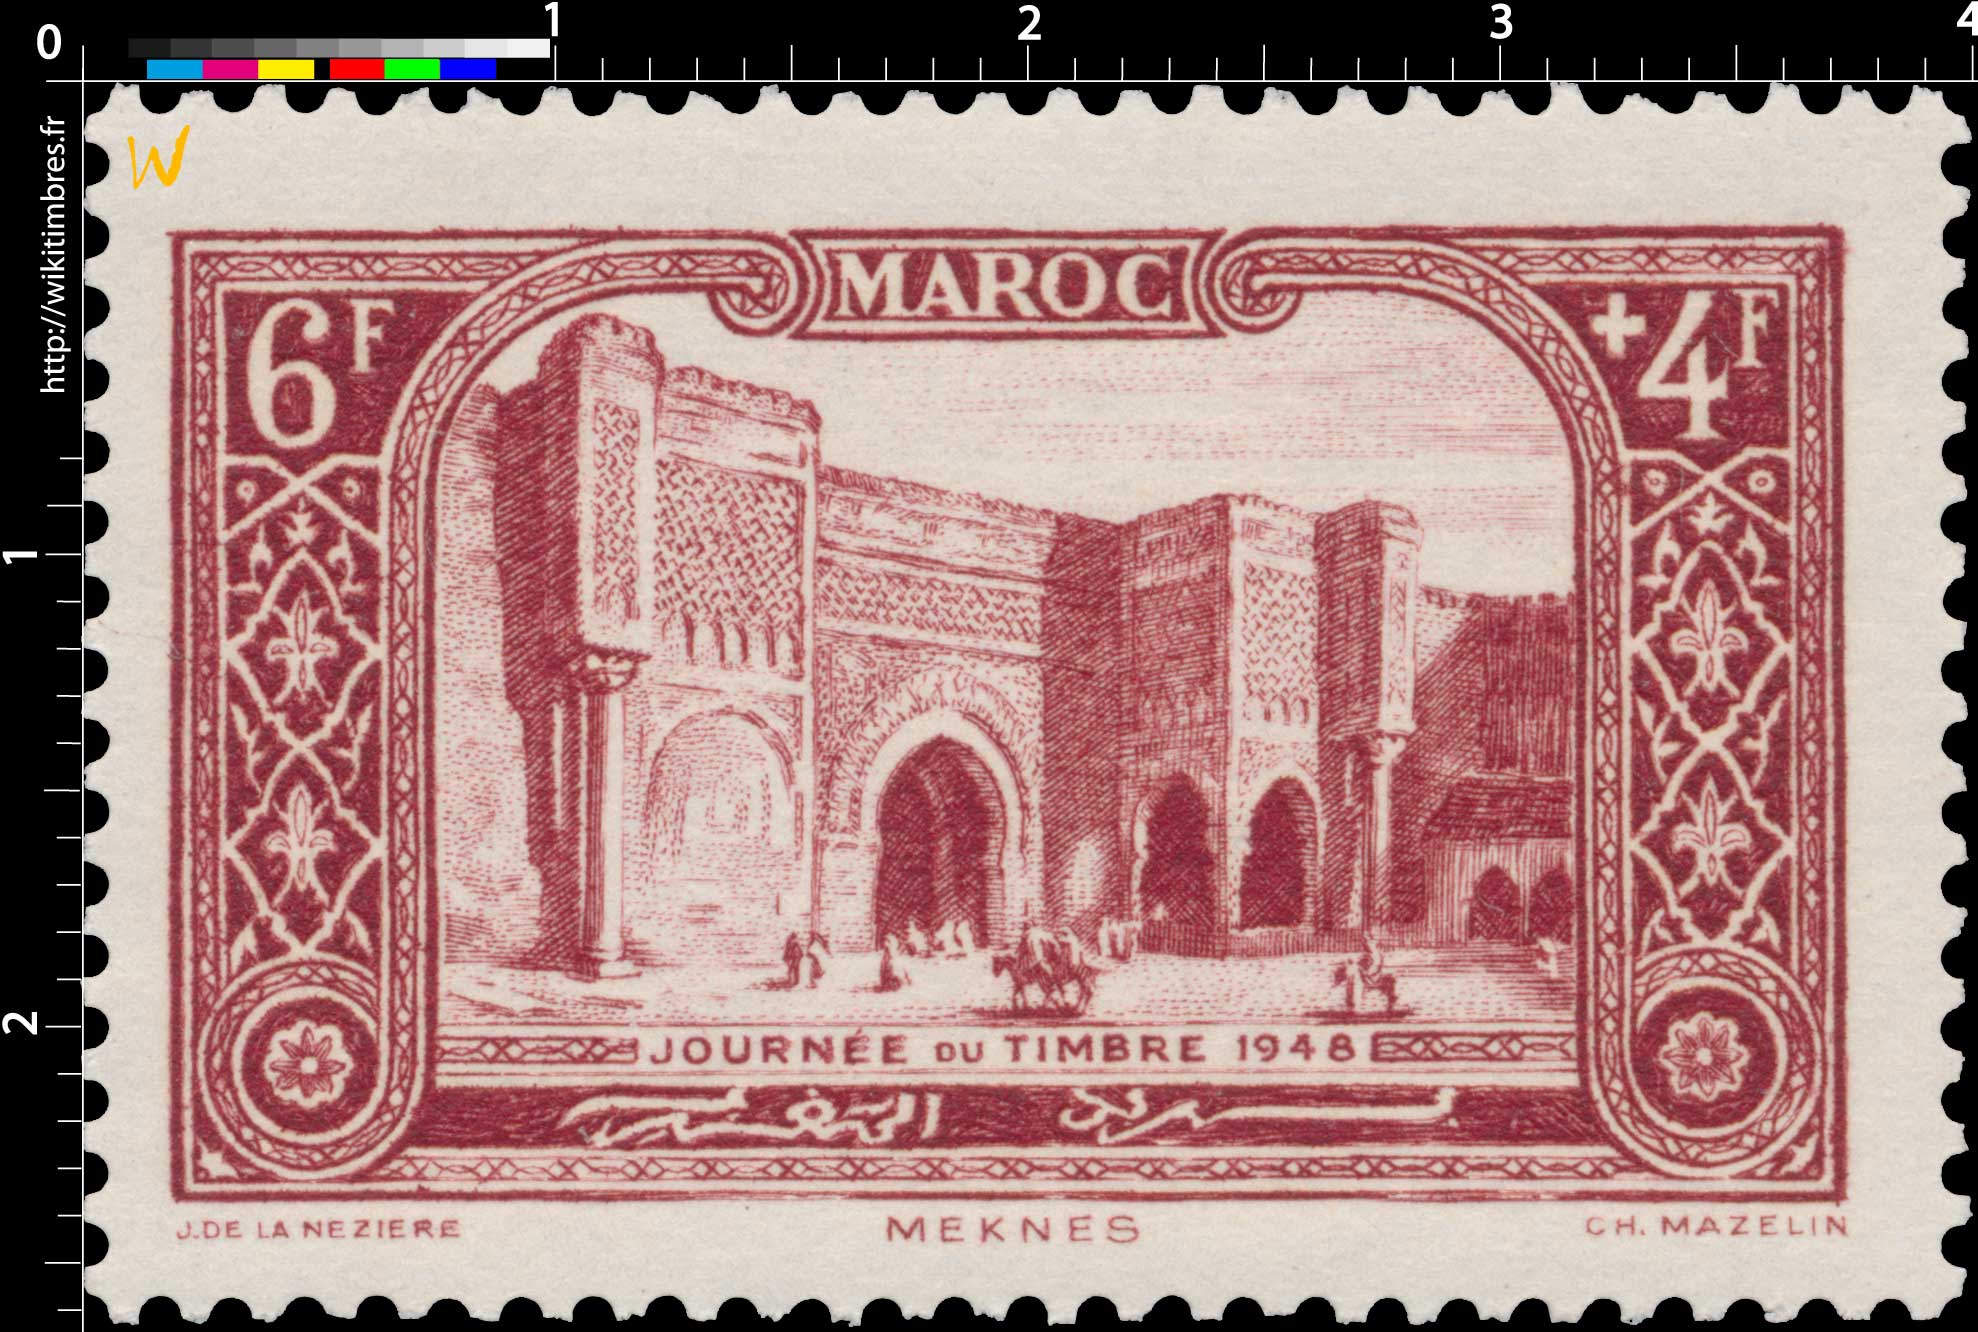 1948 Maroc - Porte Bab-el-Mansour - Mecknès